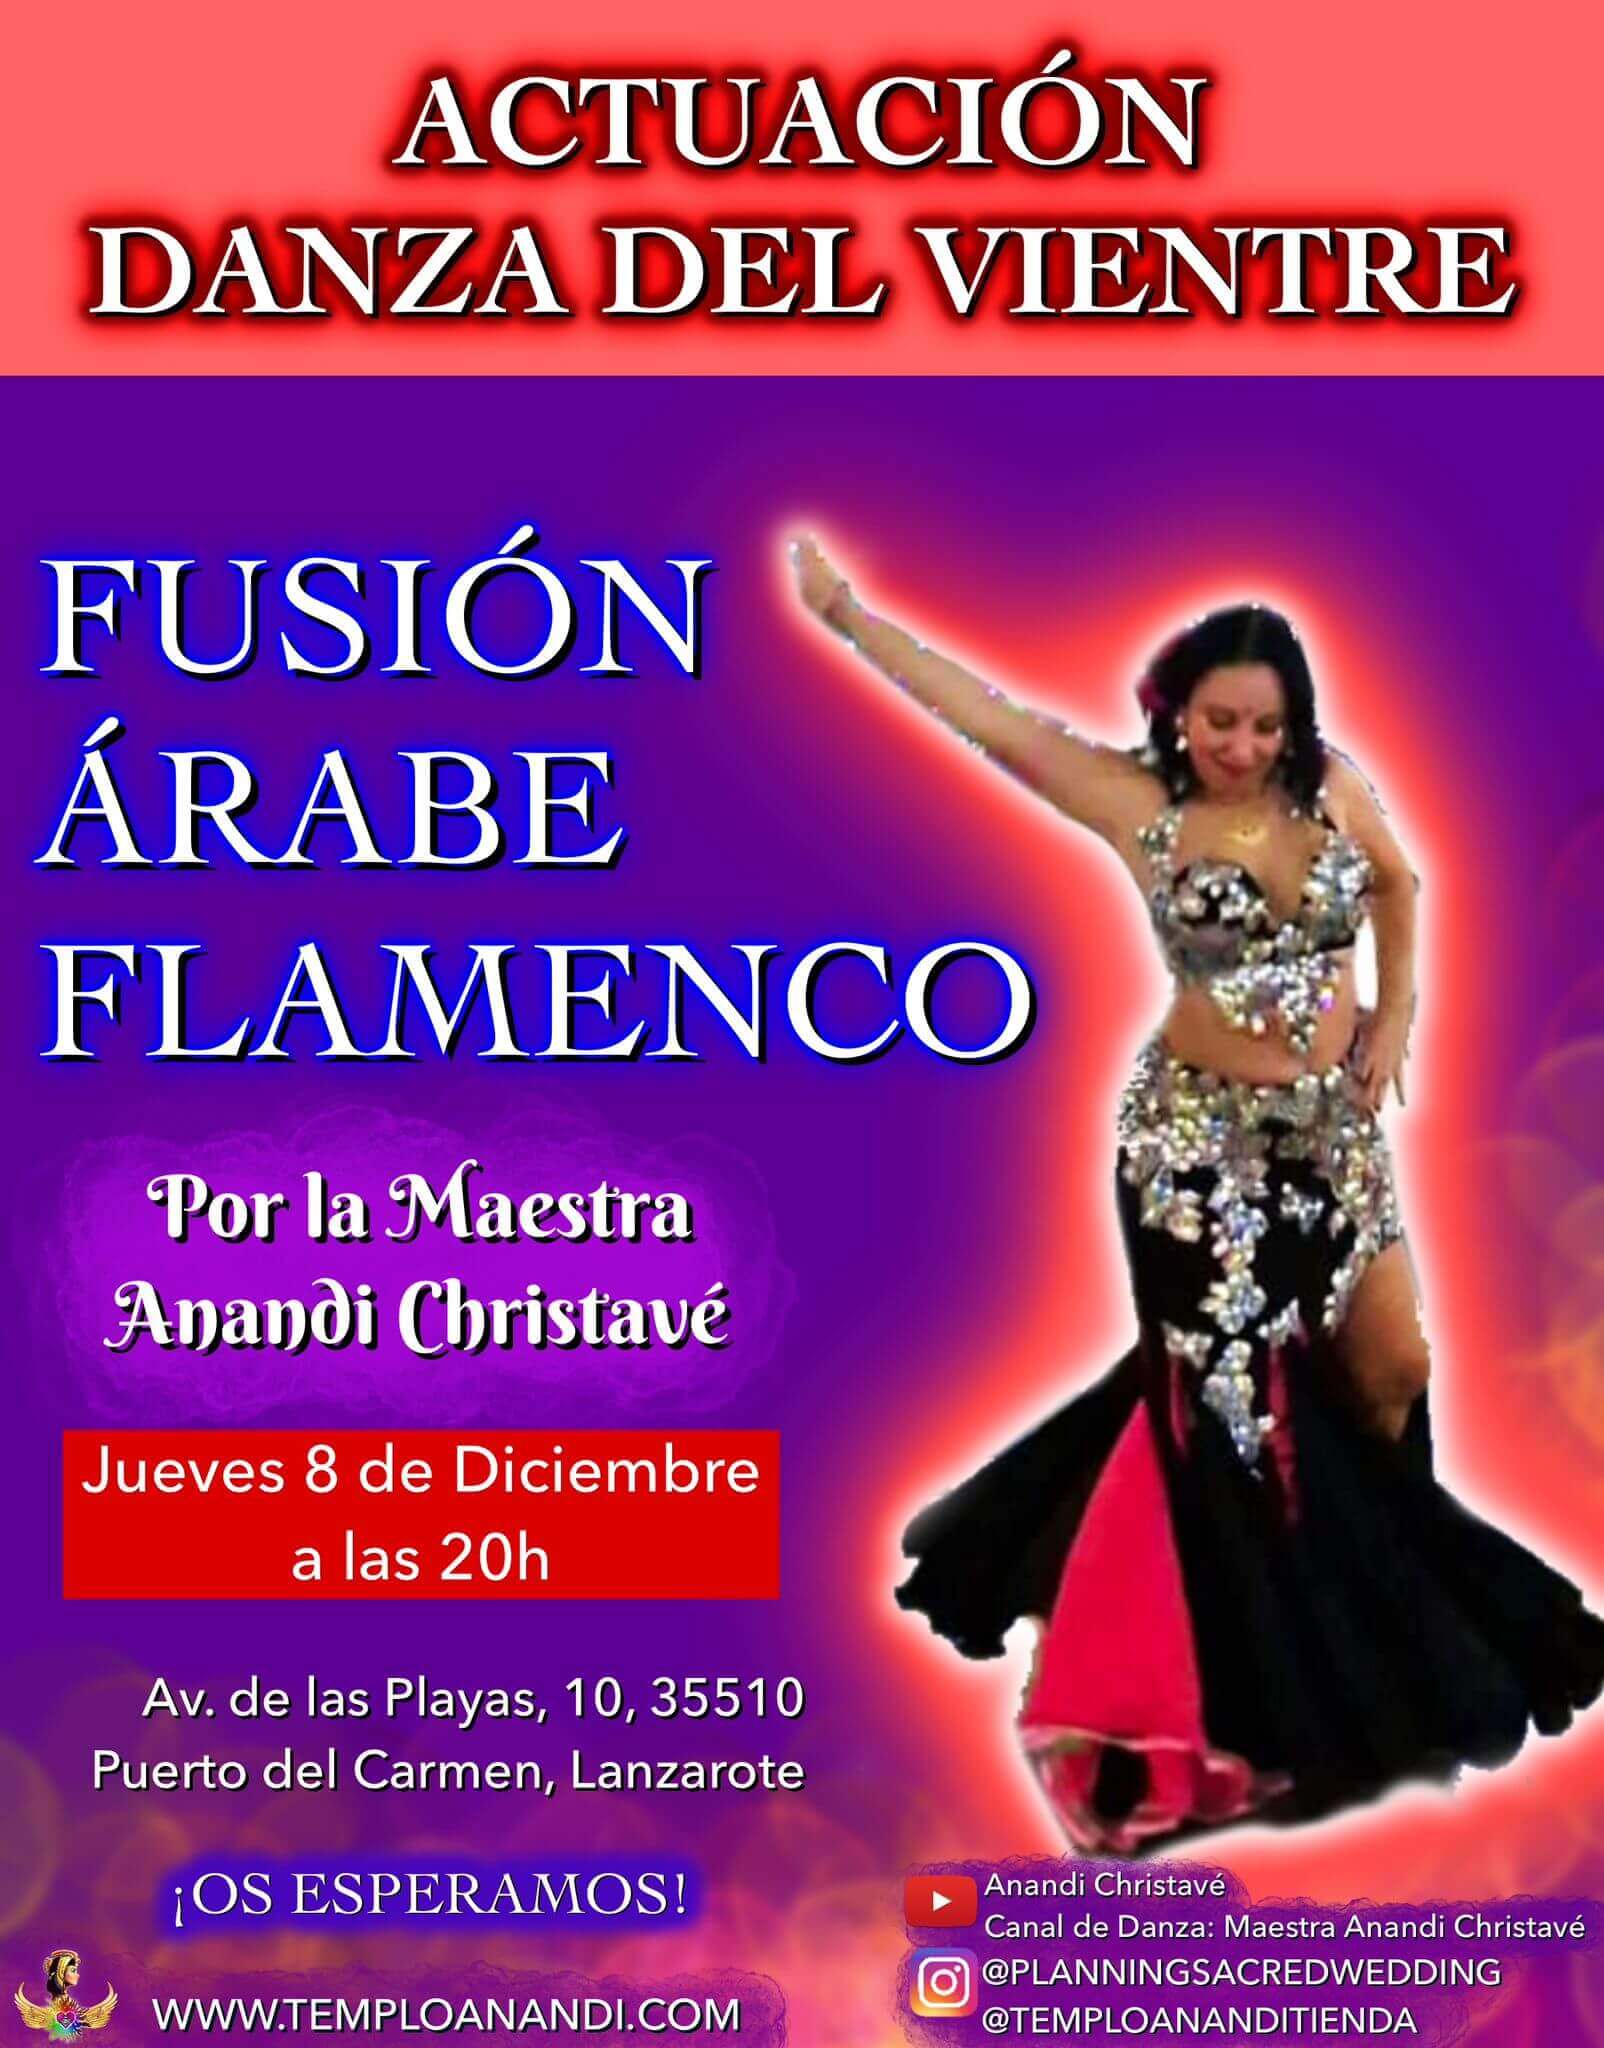 Actuación fusión arabe flamenco por la Maestra Anandi Christavé en Lanzarote